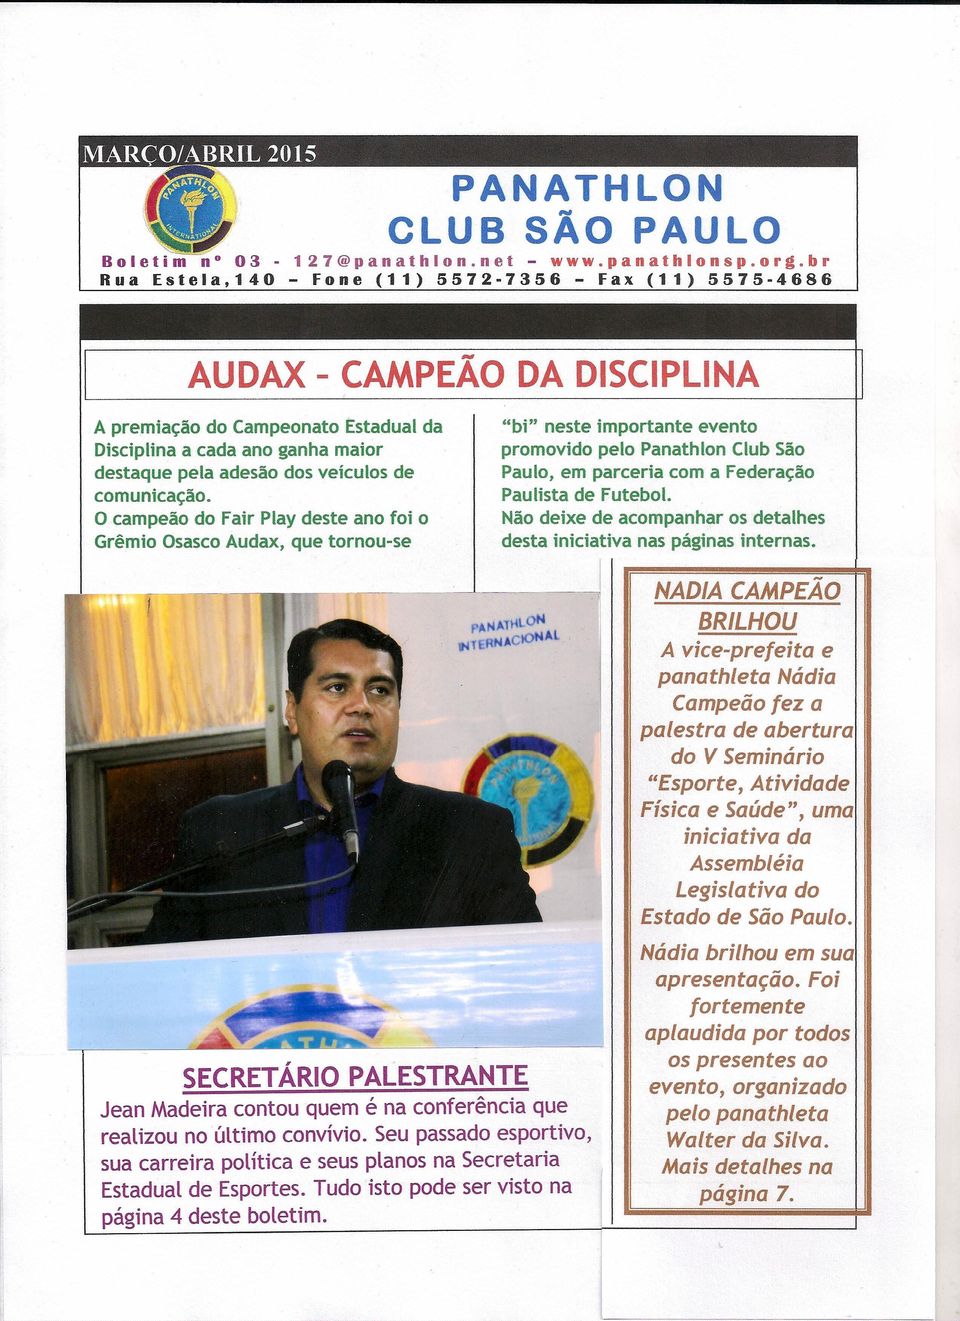 O campeão do Fair Play deste ano foi o Grêmio Osasco Audax, que tornou-se "bi" neste importante evento promovido pelo Panathlon Club São Paulo, em parceria com a Federação Paulista de Futebol.